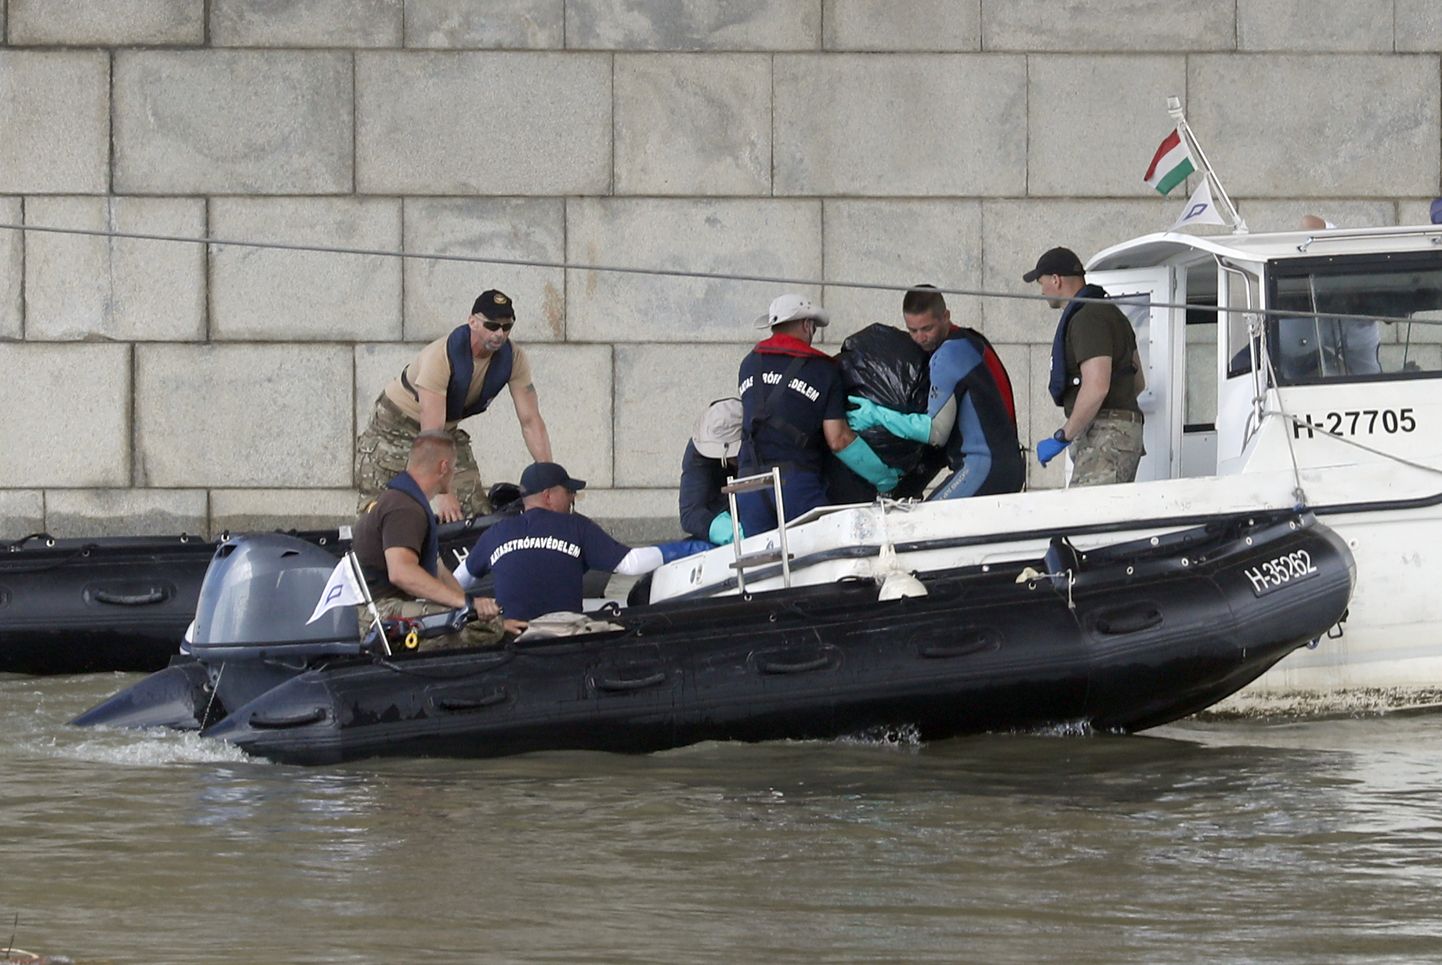 Doonau jõel põhja läinud turismilaeva vrakist leidsid sukeldujad uppunu.